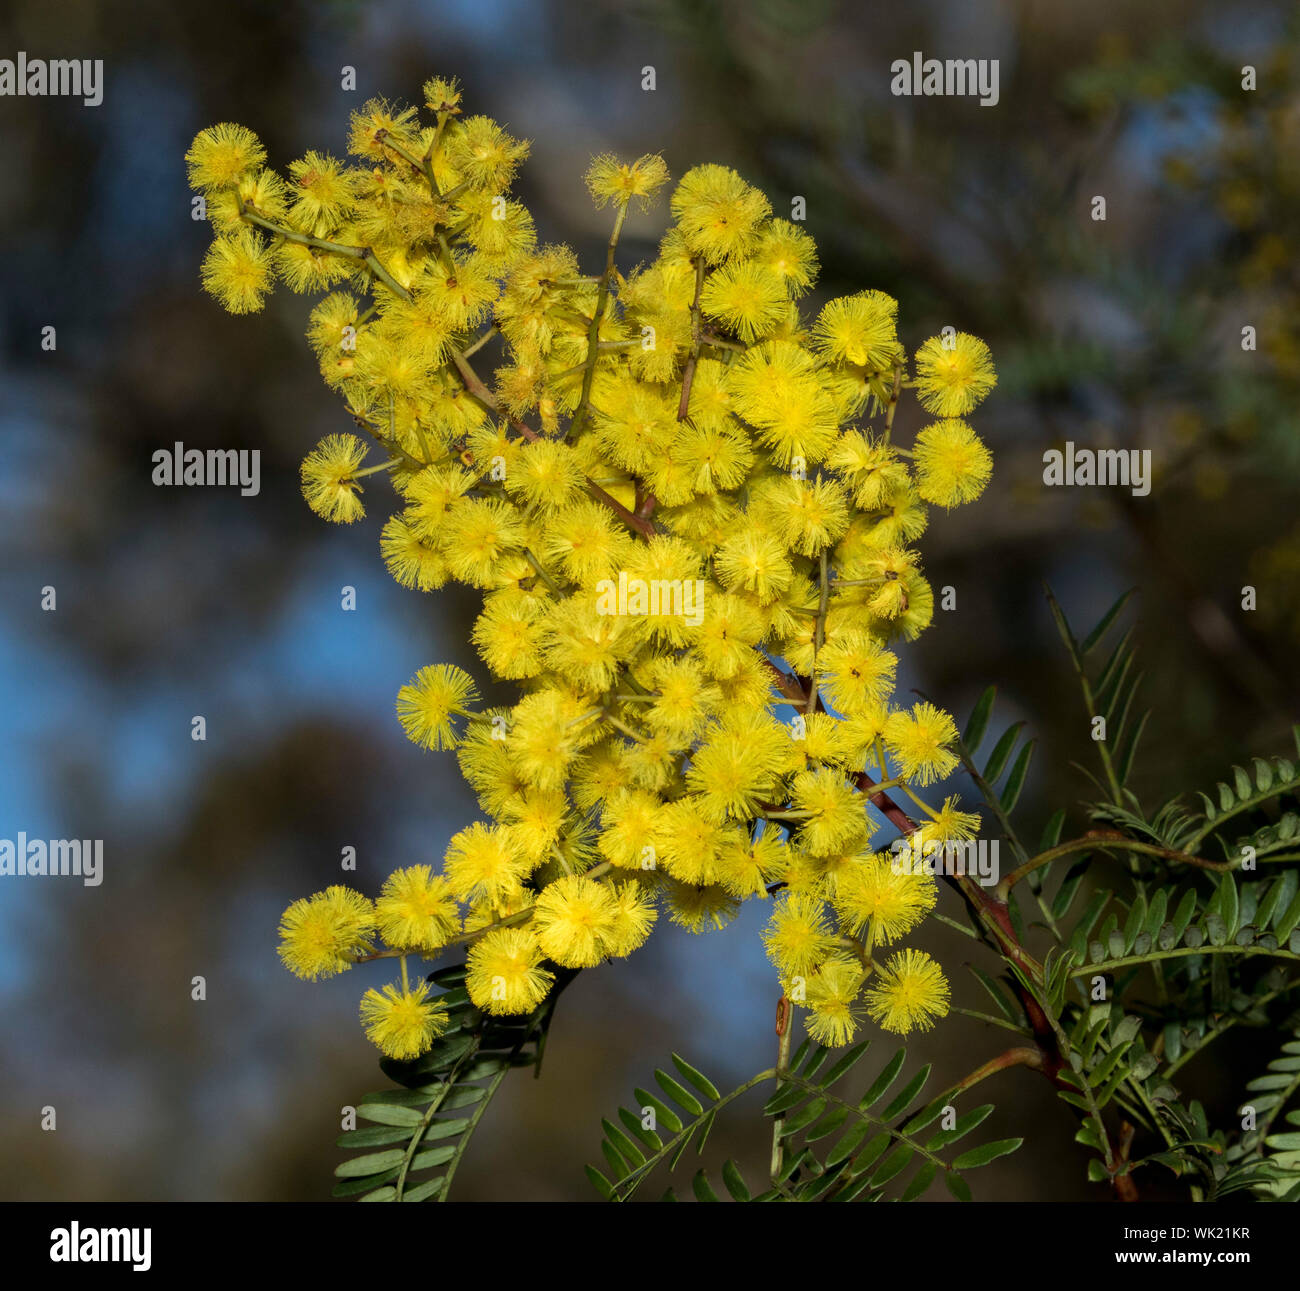 Fleurs jaune or et vert feuilles d'Acacia spectabilis / Mudgee wattle, fleurs sauvages de l'Australie sur fond bleu du ciel et le feuillage dans la forêt EN IN Banque D'Images